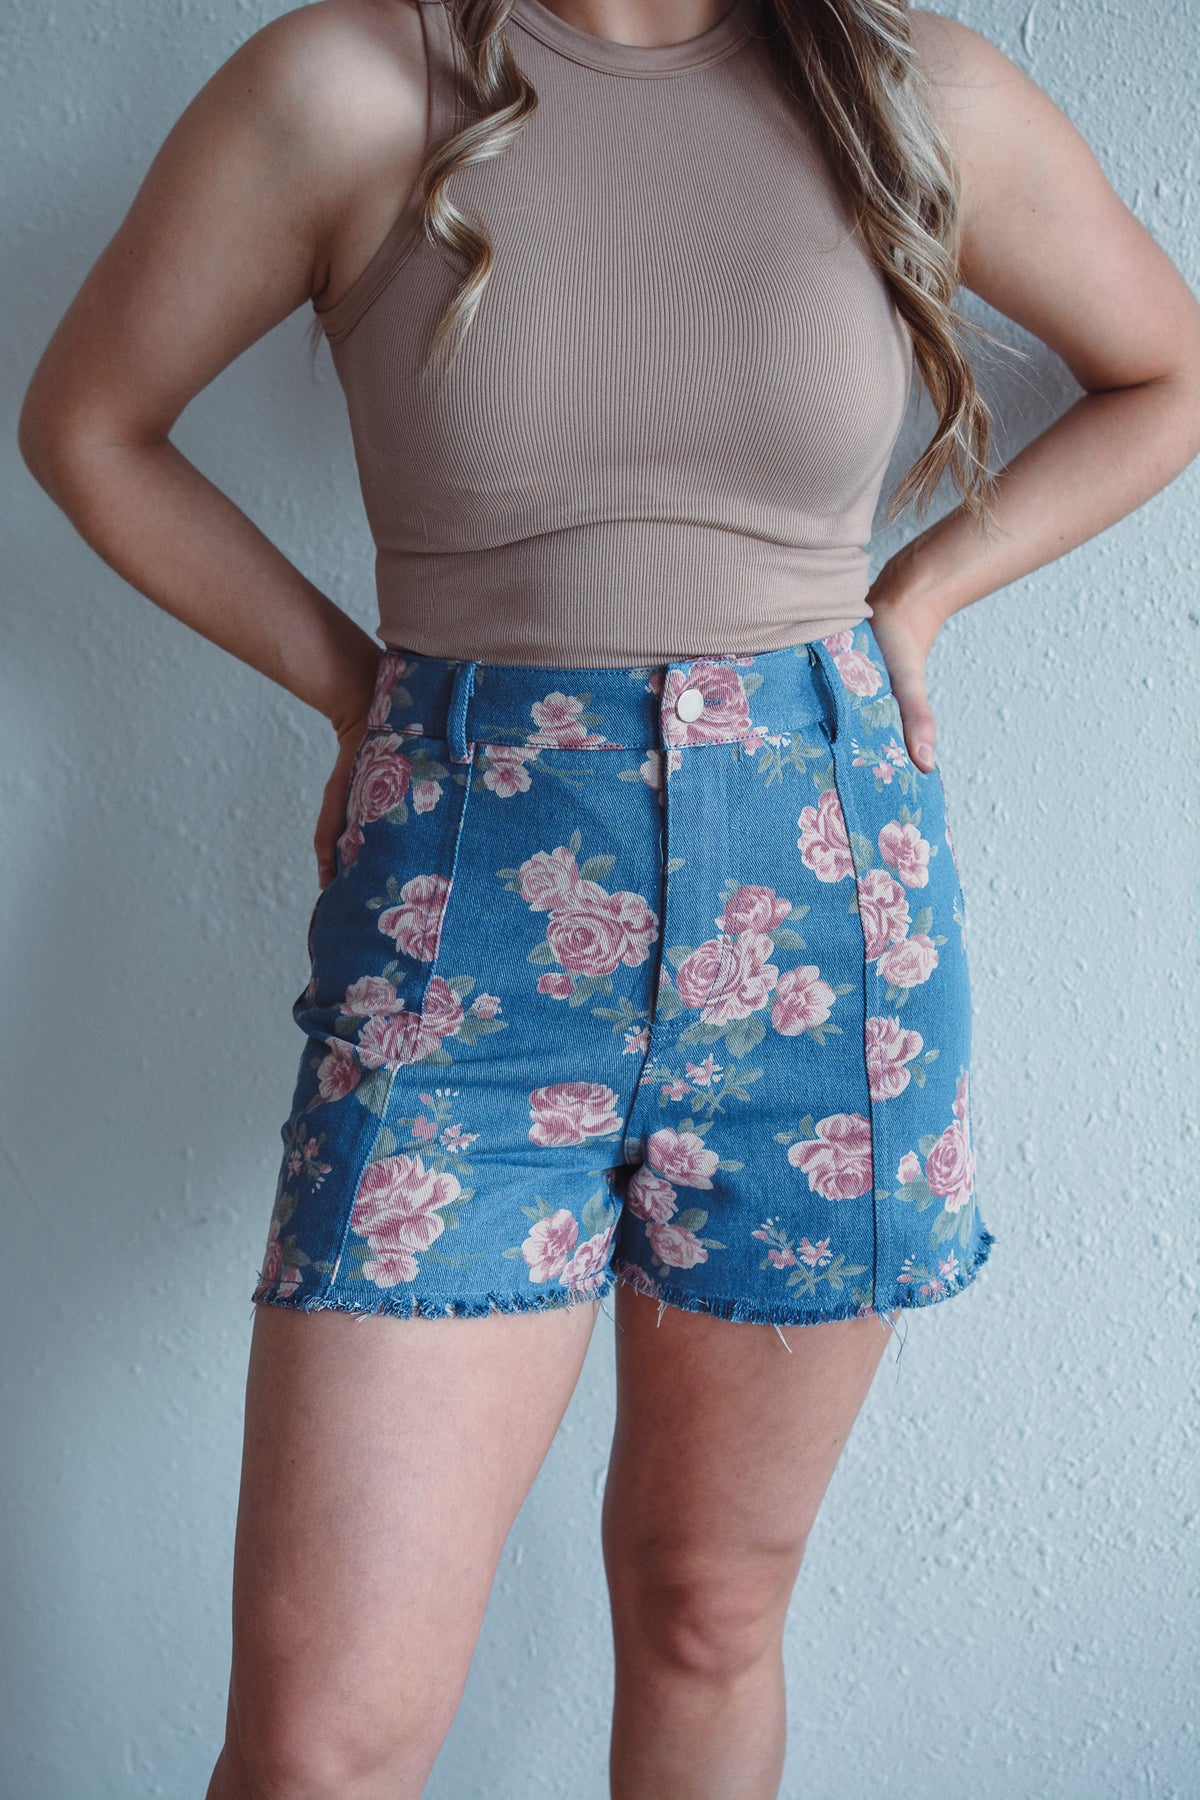 Vintage Floral Shorts